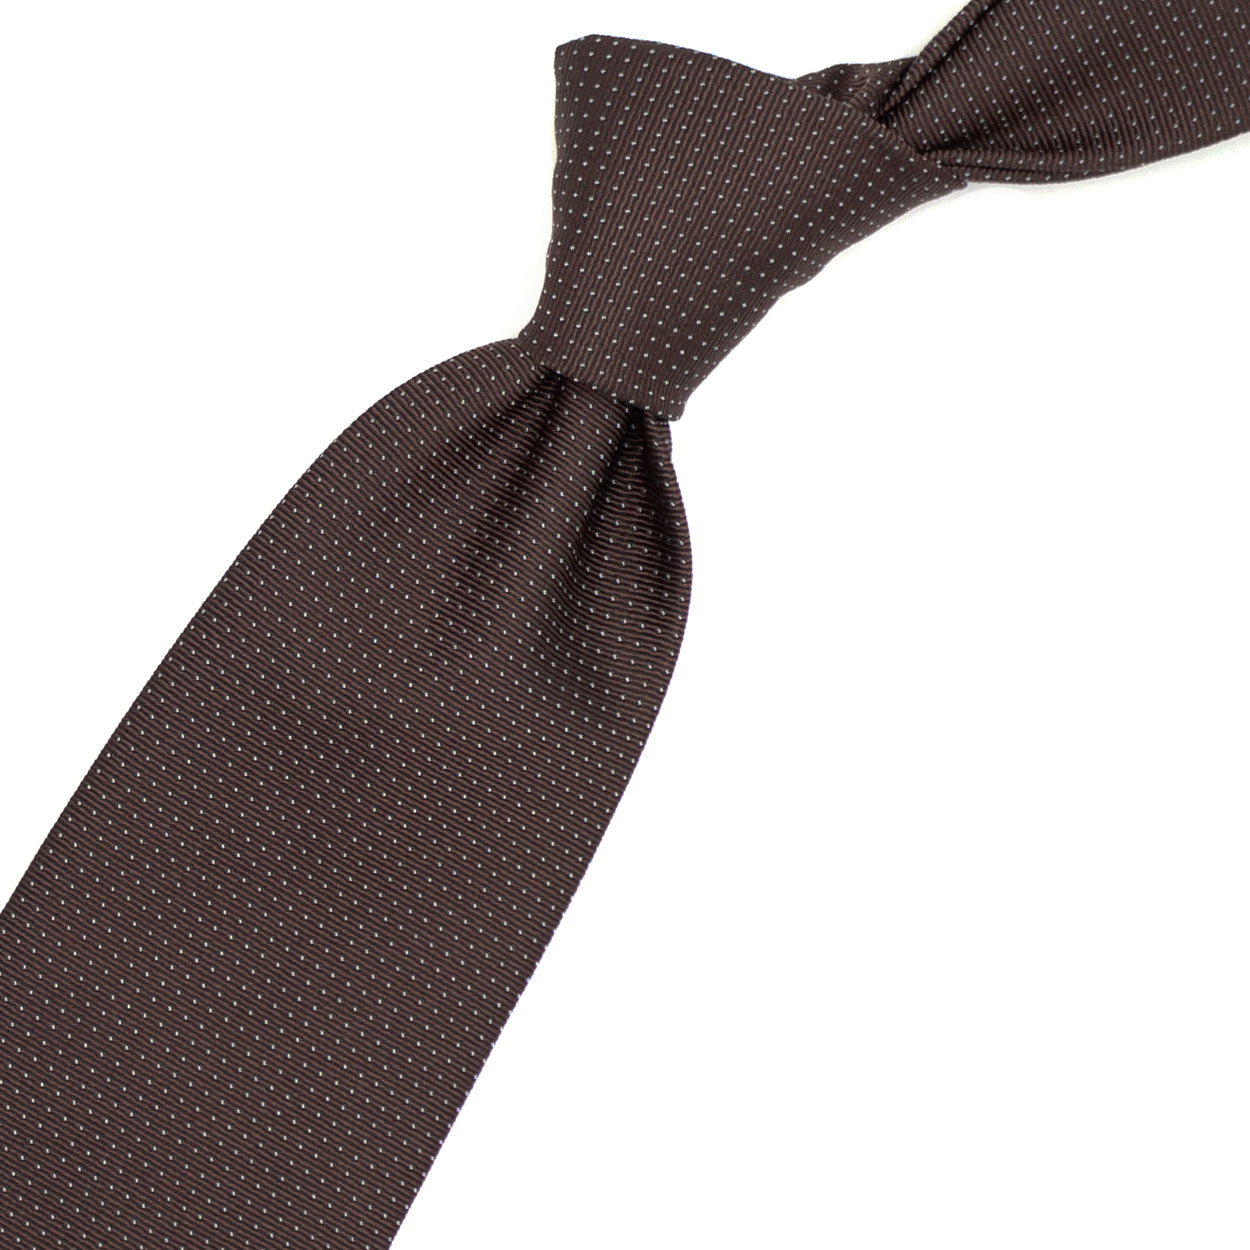 Cravatta marrone con punti a spillo azzurri